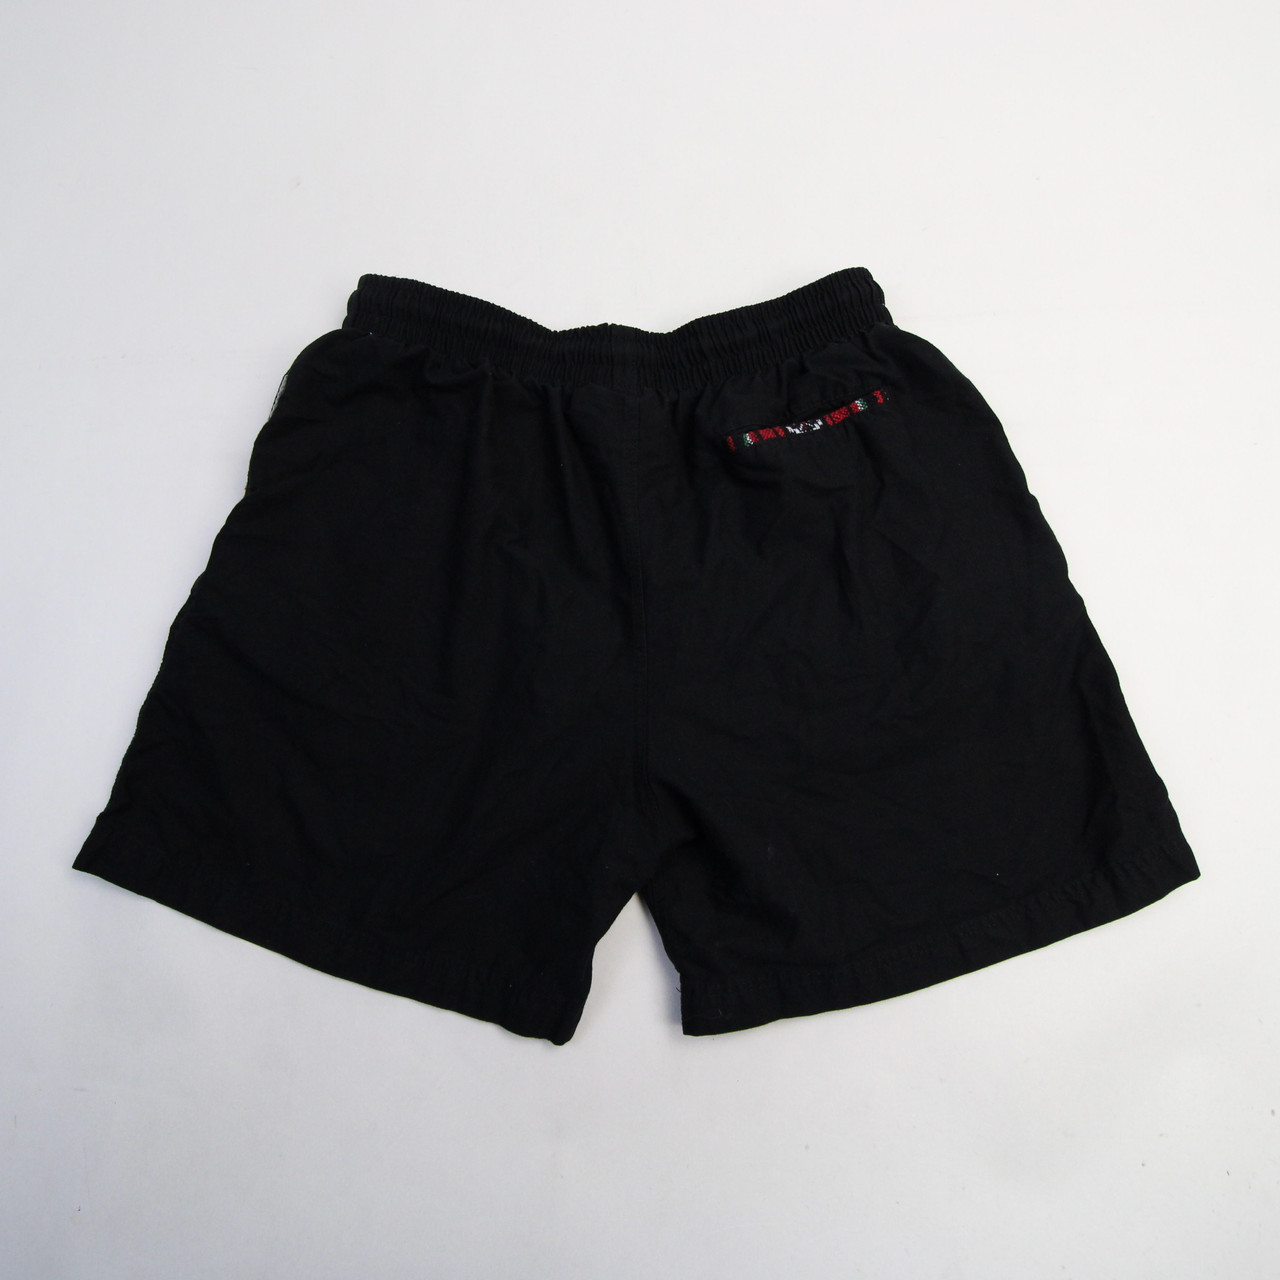 Preloved Men's Shorts - Black - L